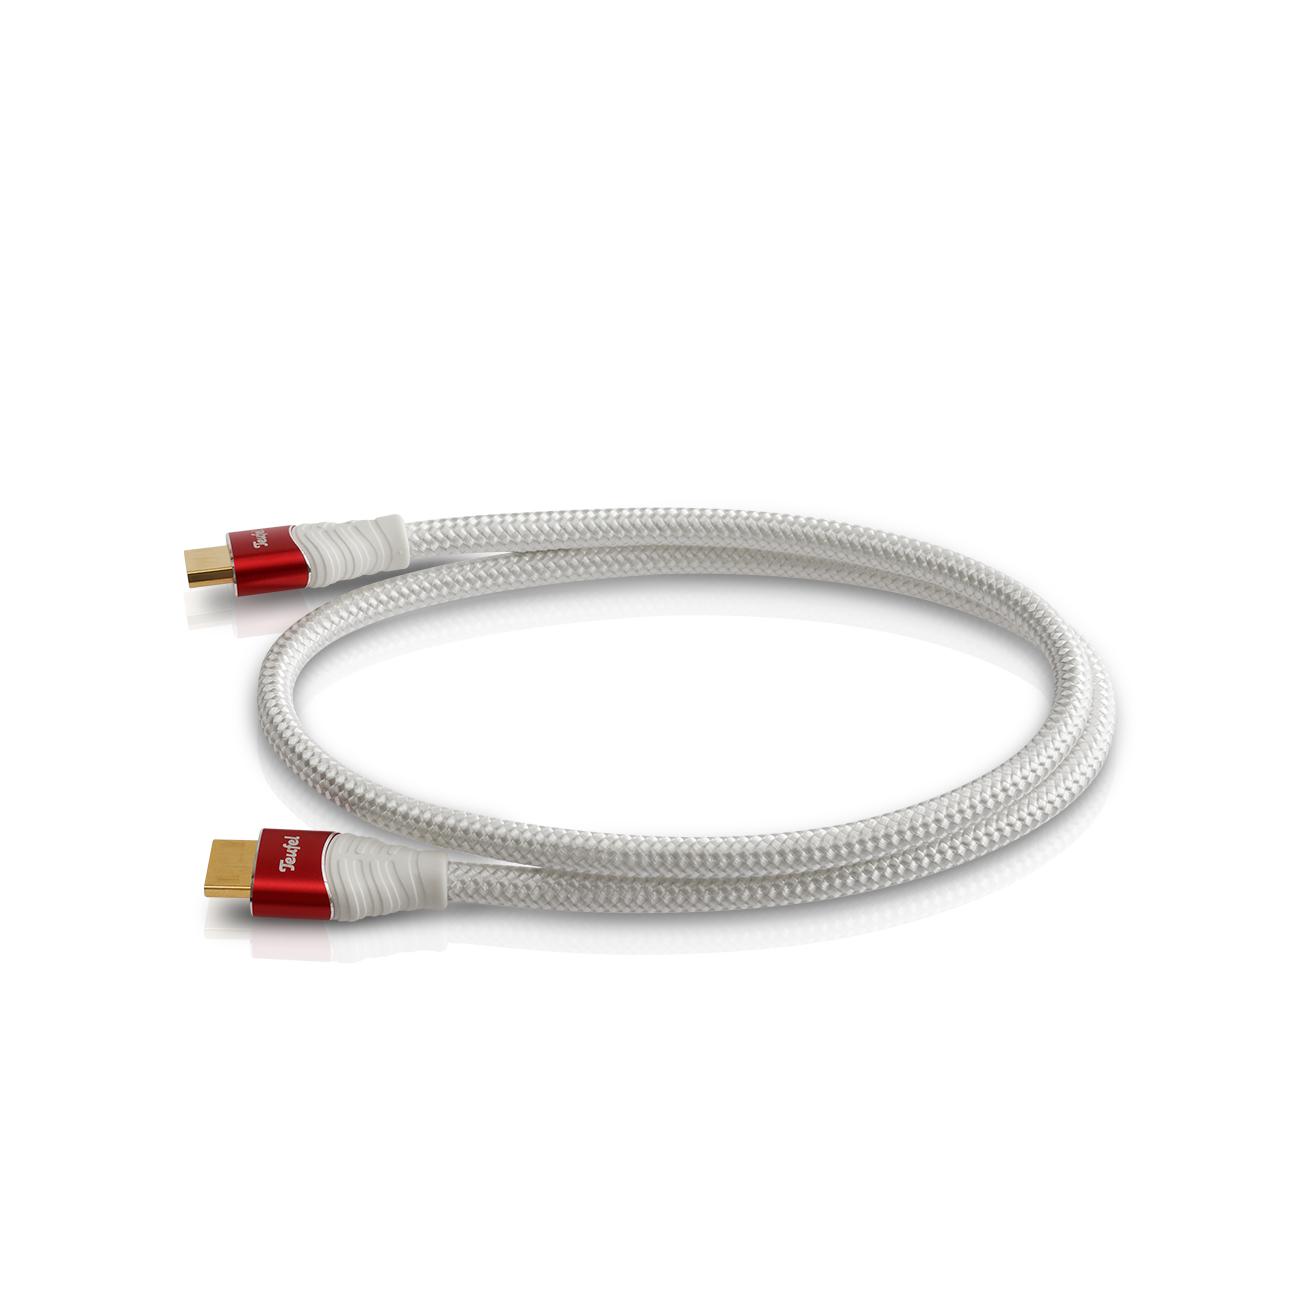 Teufel HDMI 2.0 kabel rond 0,75 m - Highspeed HDMI kabel ondersteunt alle 2.0 specificaties, zoals 4K 50/60p en 4K 3D - wit